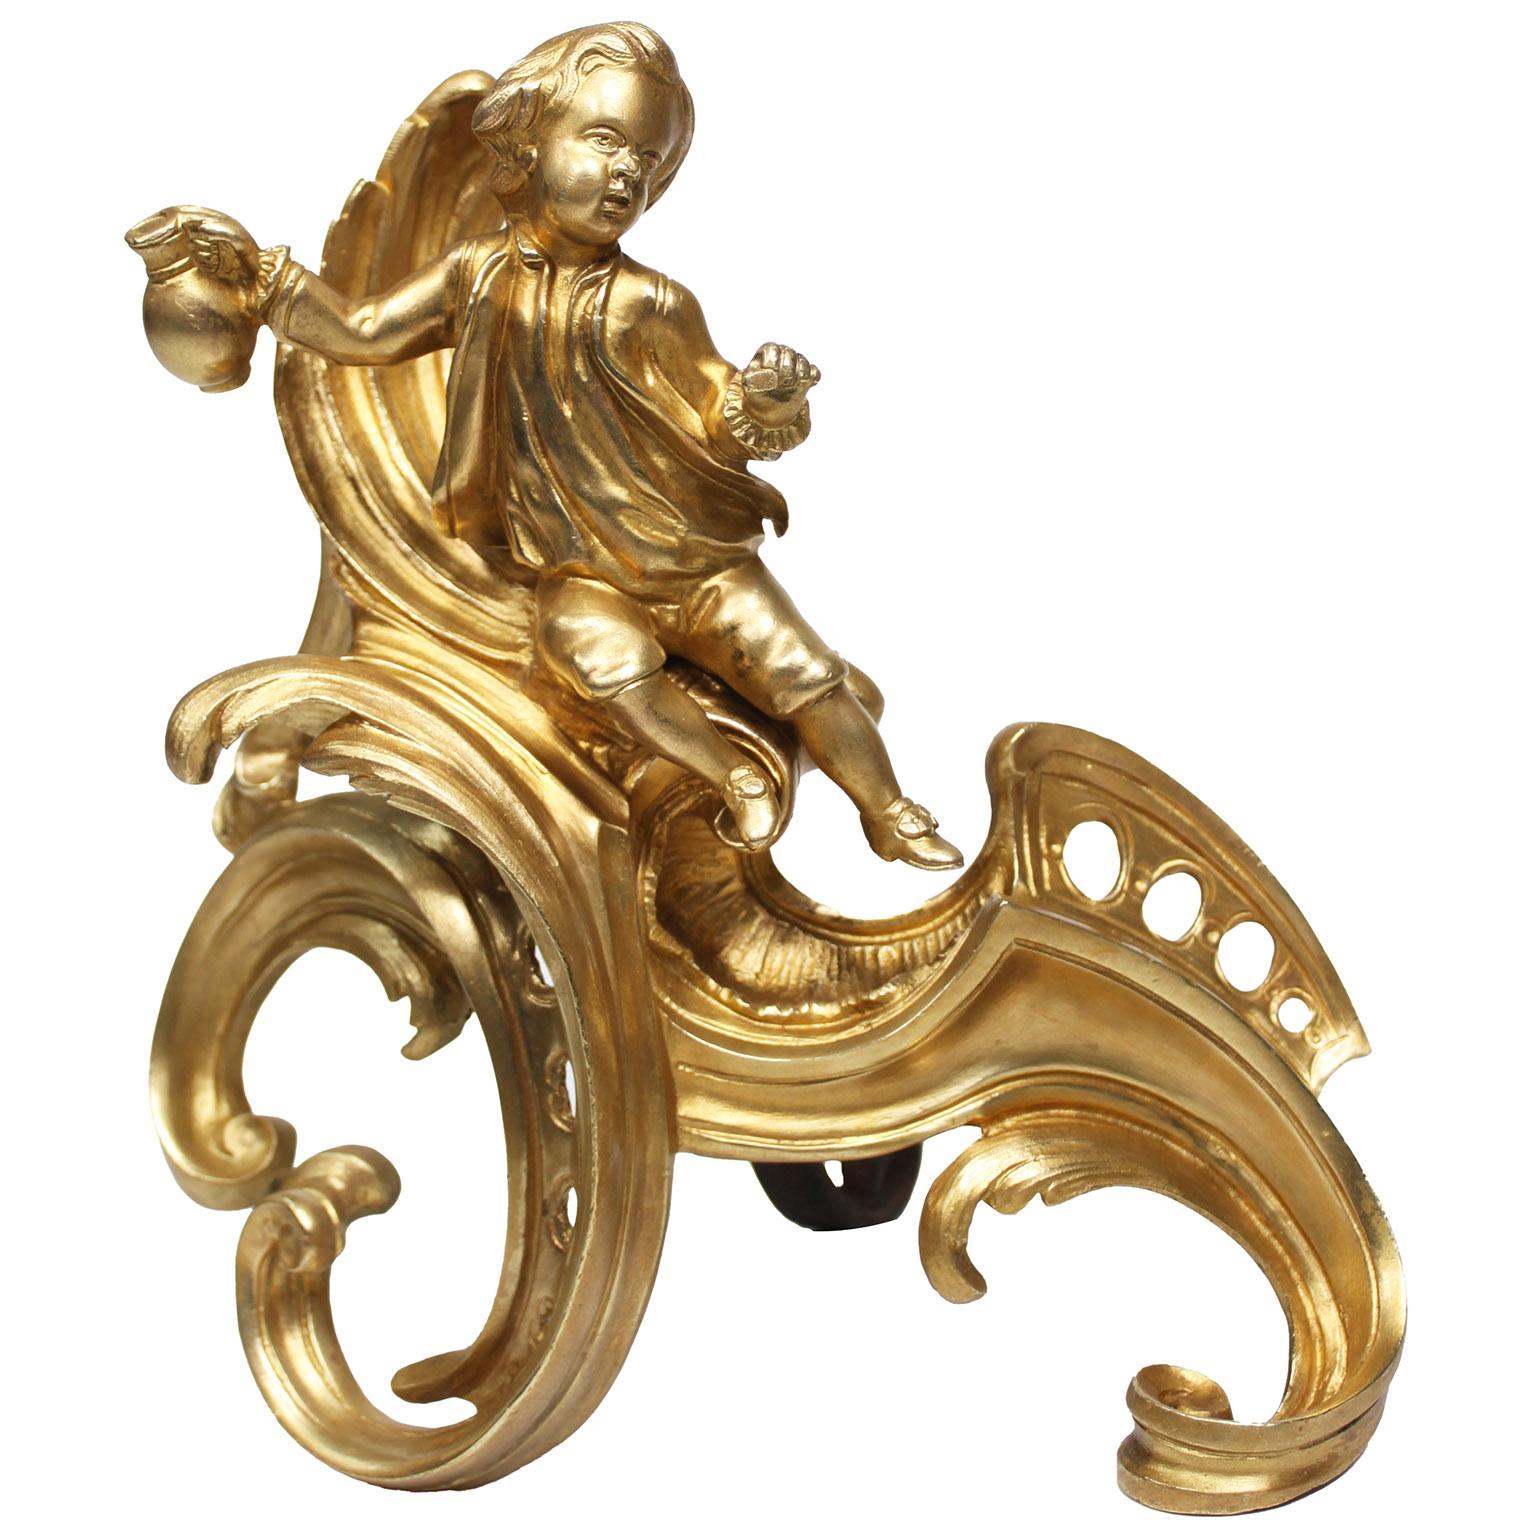 Paire de chenets en bronze doré de style Louis XV du début du XIXe siècle. Le corps chantourné et percé, chacun surmonté d'une figure d'un jeune garçon et d'une jeune fille, tous deux assis sur une feuille d'acanthe, vers 1800.

Mesures : Hauteur 10